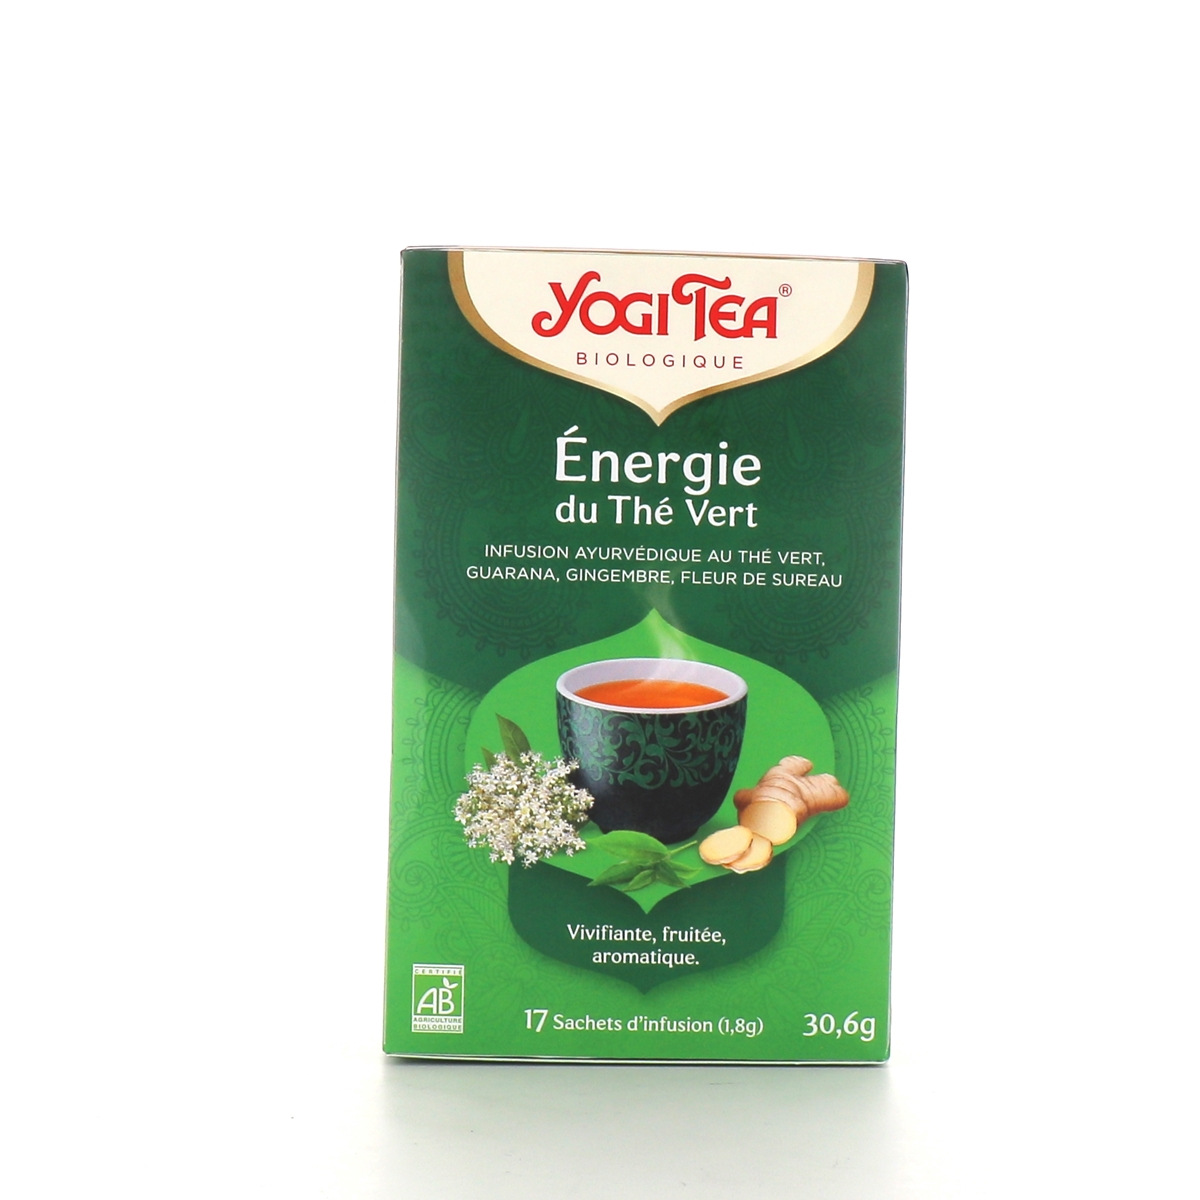 Yogi énergie du thé vert ((CVZHZ3L82272)) € 3,65 - New seeds